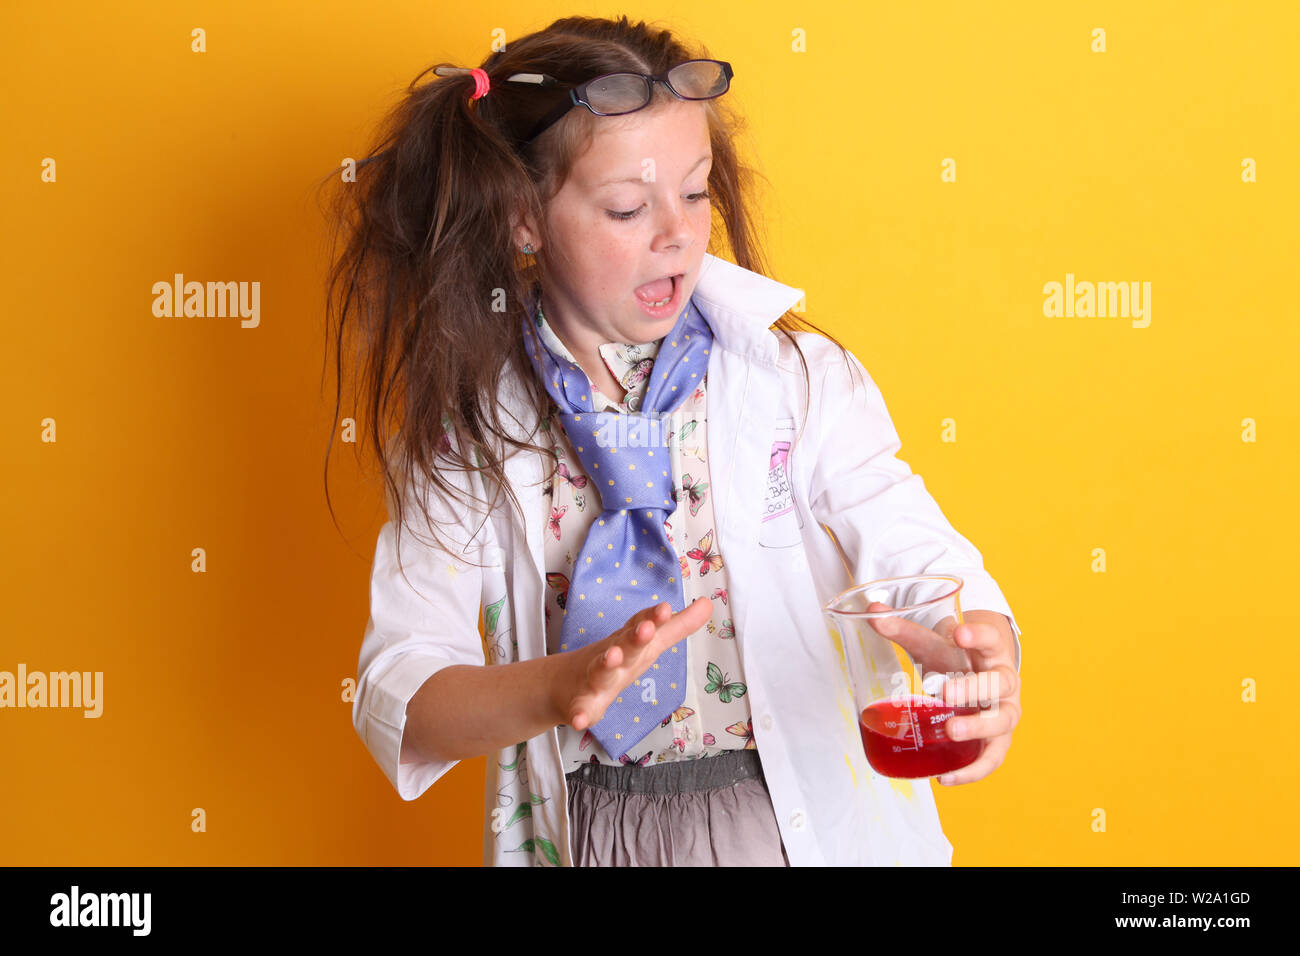 Signor - Scienza Geek giovane ragazza / femmina - 7 anni - bambino guardando sorpreso in borosilicato scienza becher con prodotti chimici di colore rosso su sfondo giallo Foto Stock